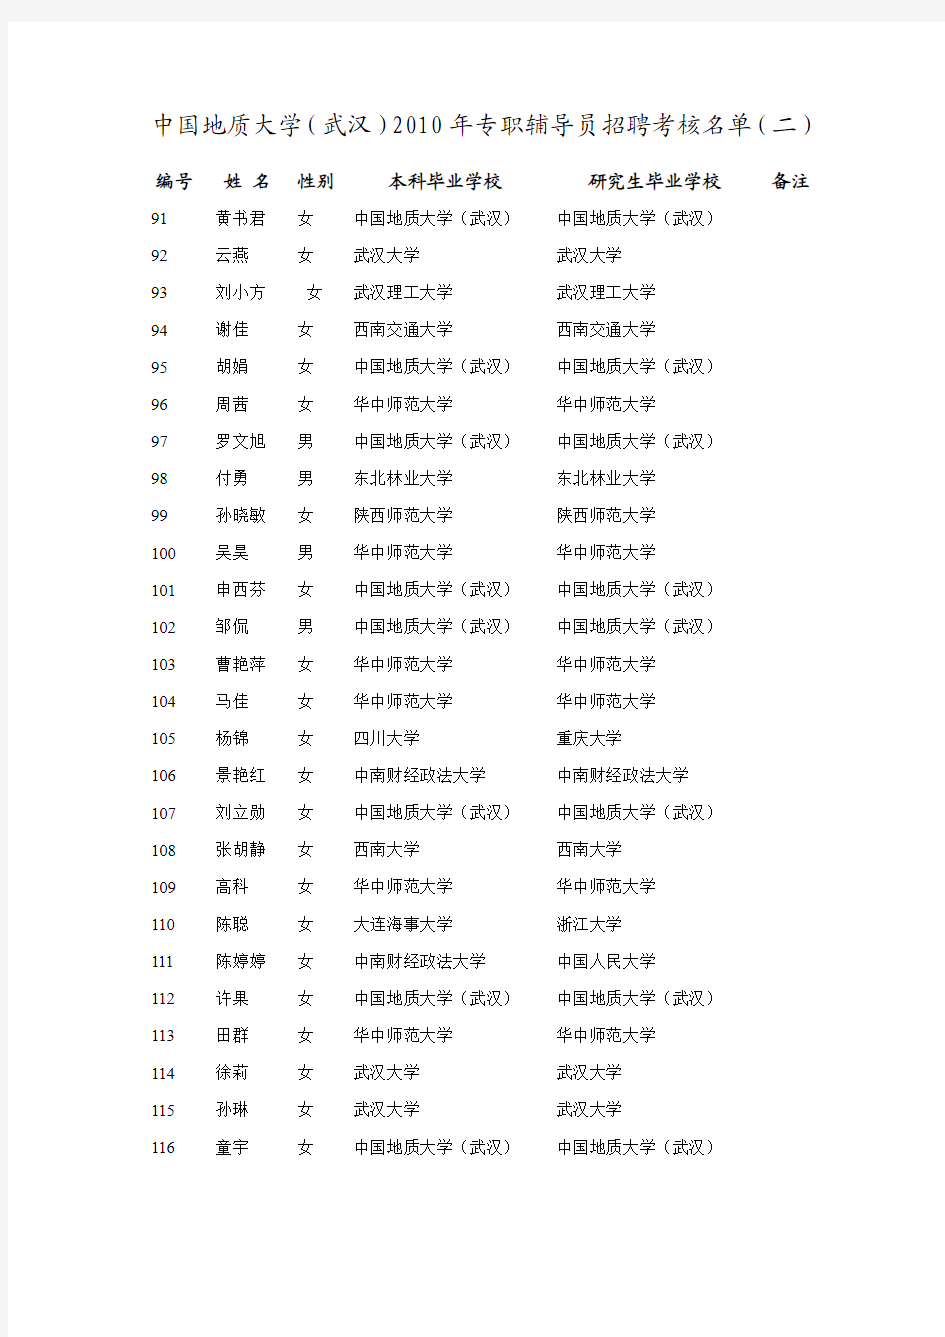 中国地质大学(武汉)2010年专职辅导员招聘考核名单(二)